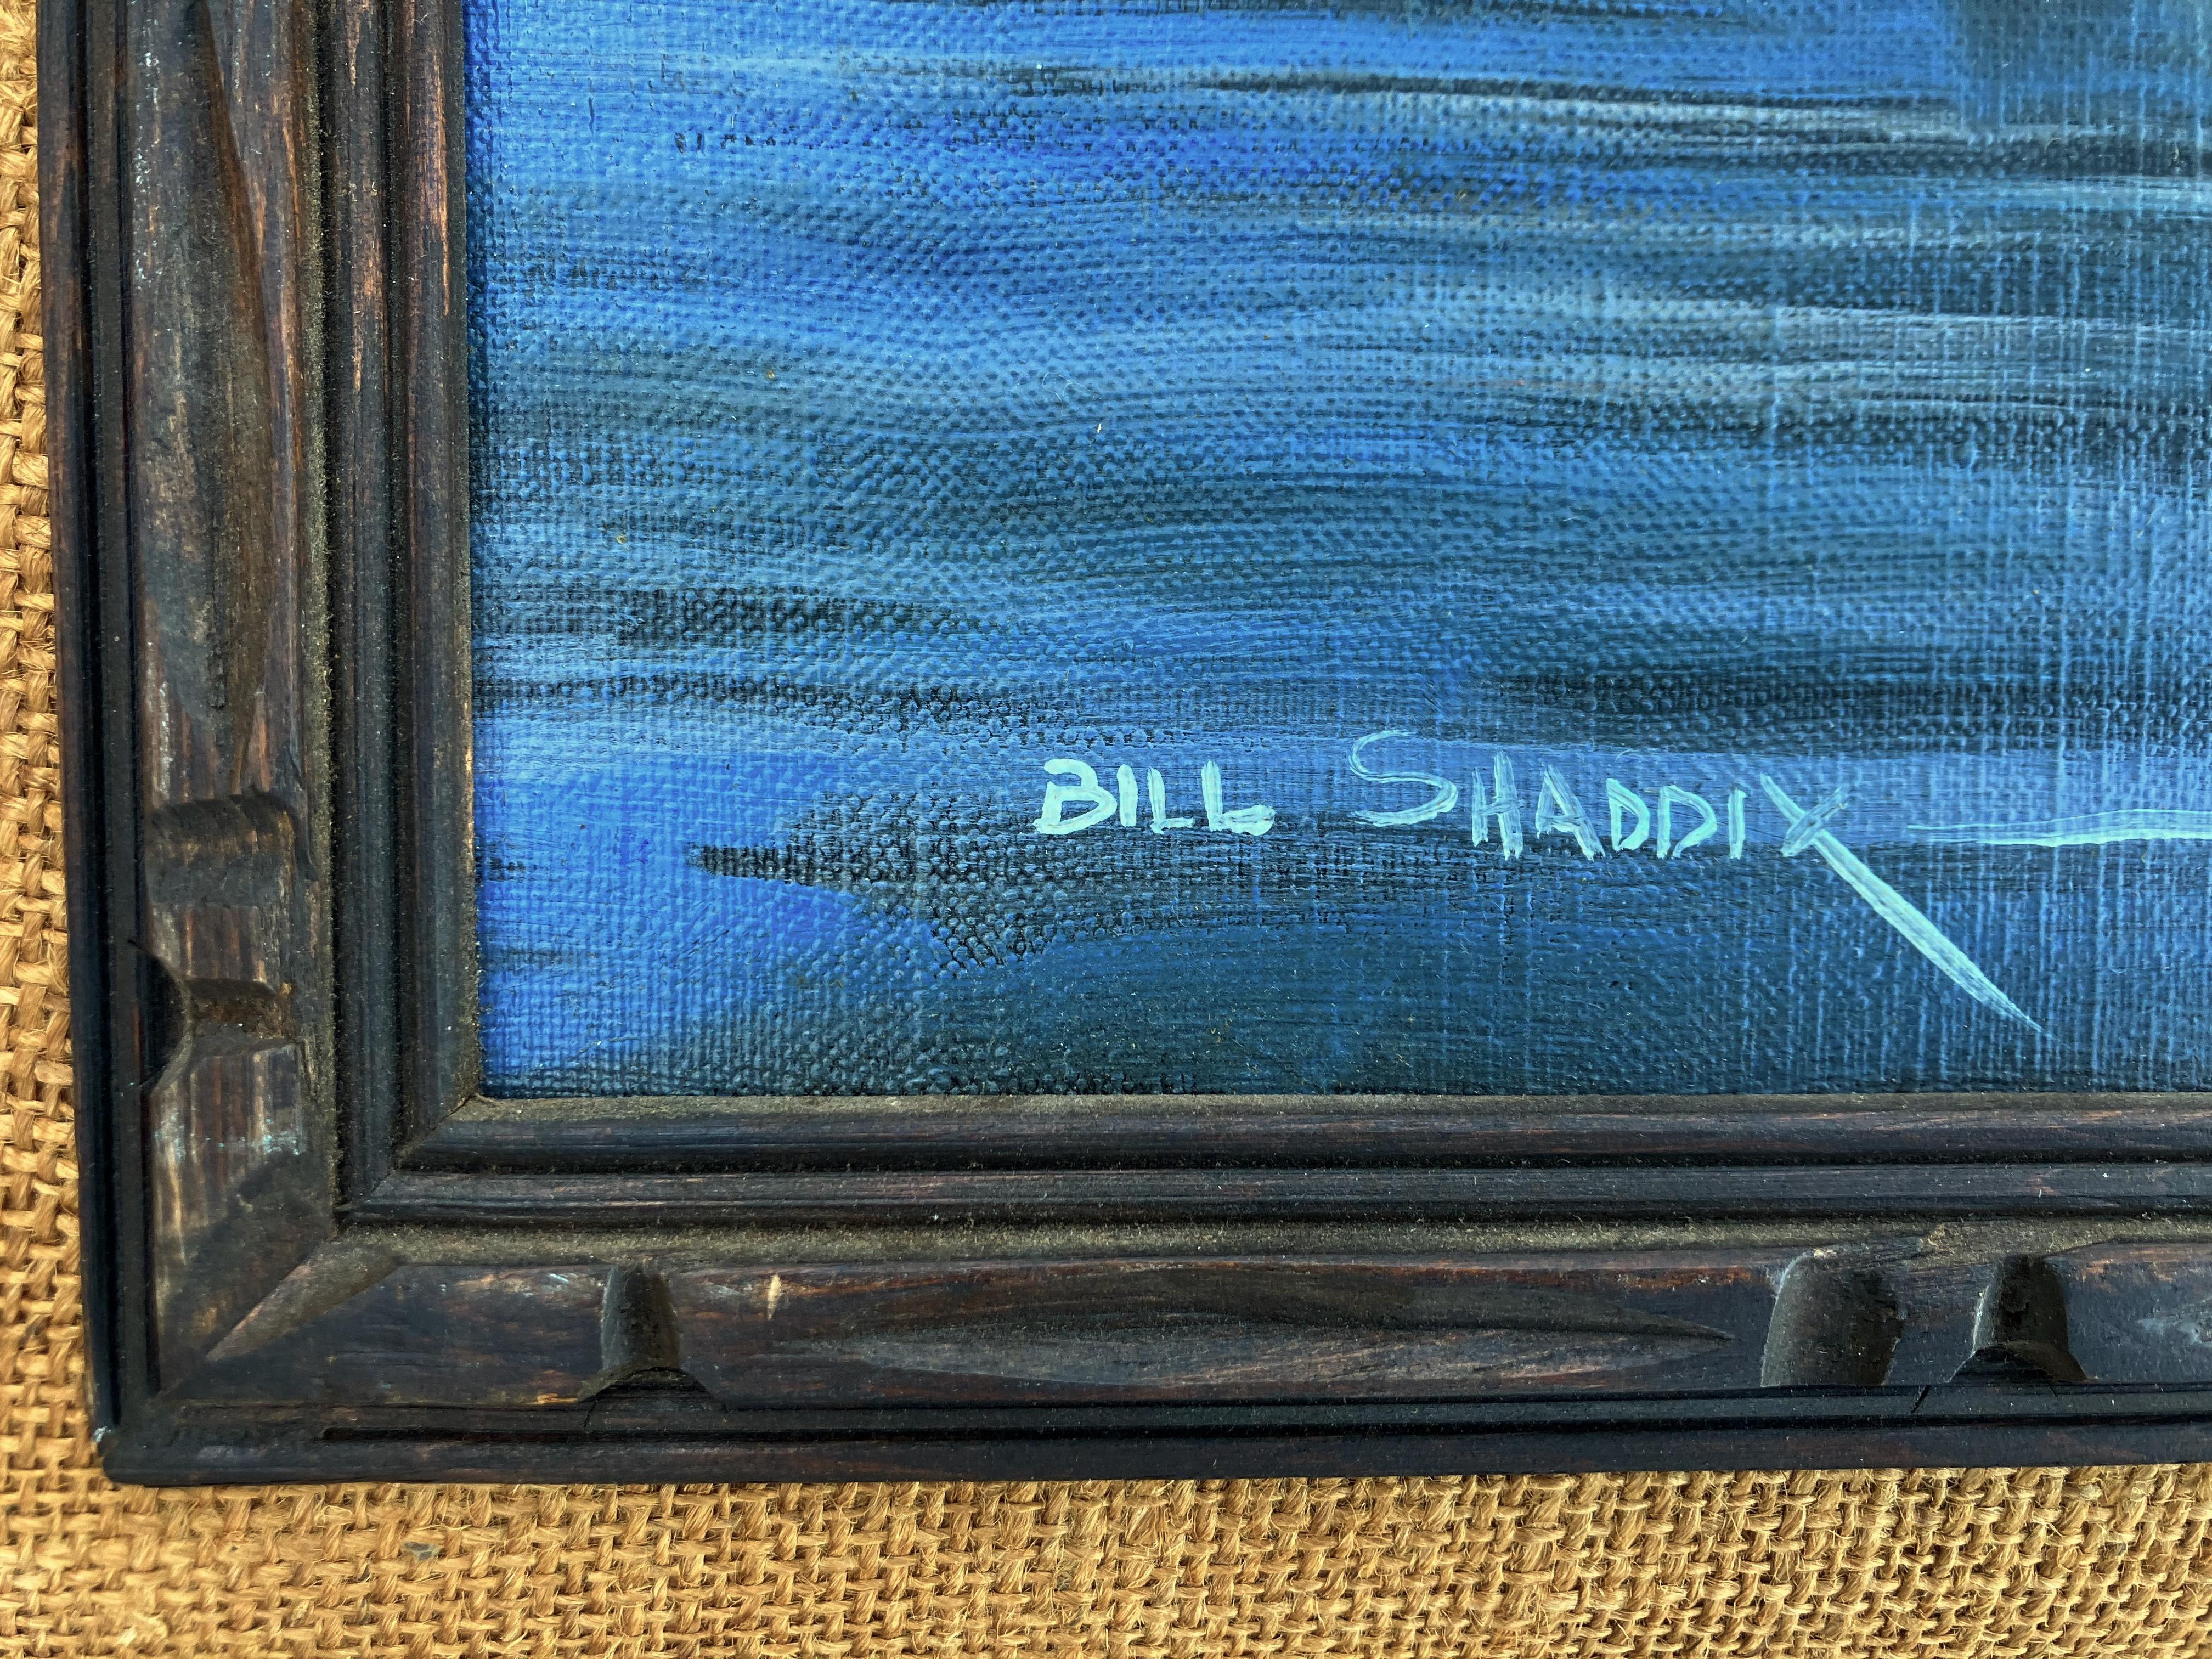 bill shaddix art